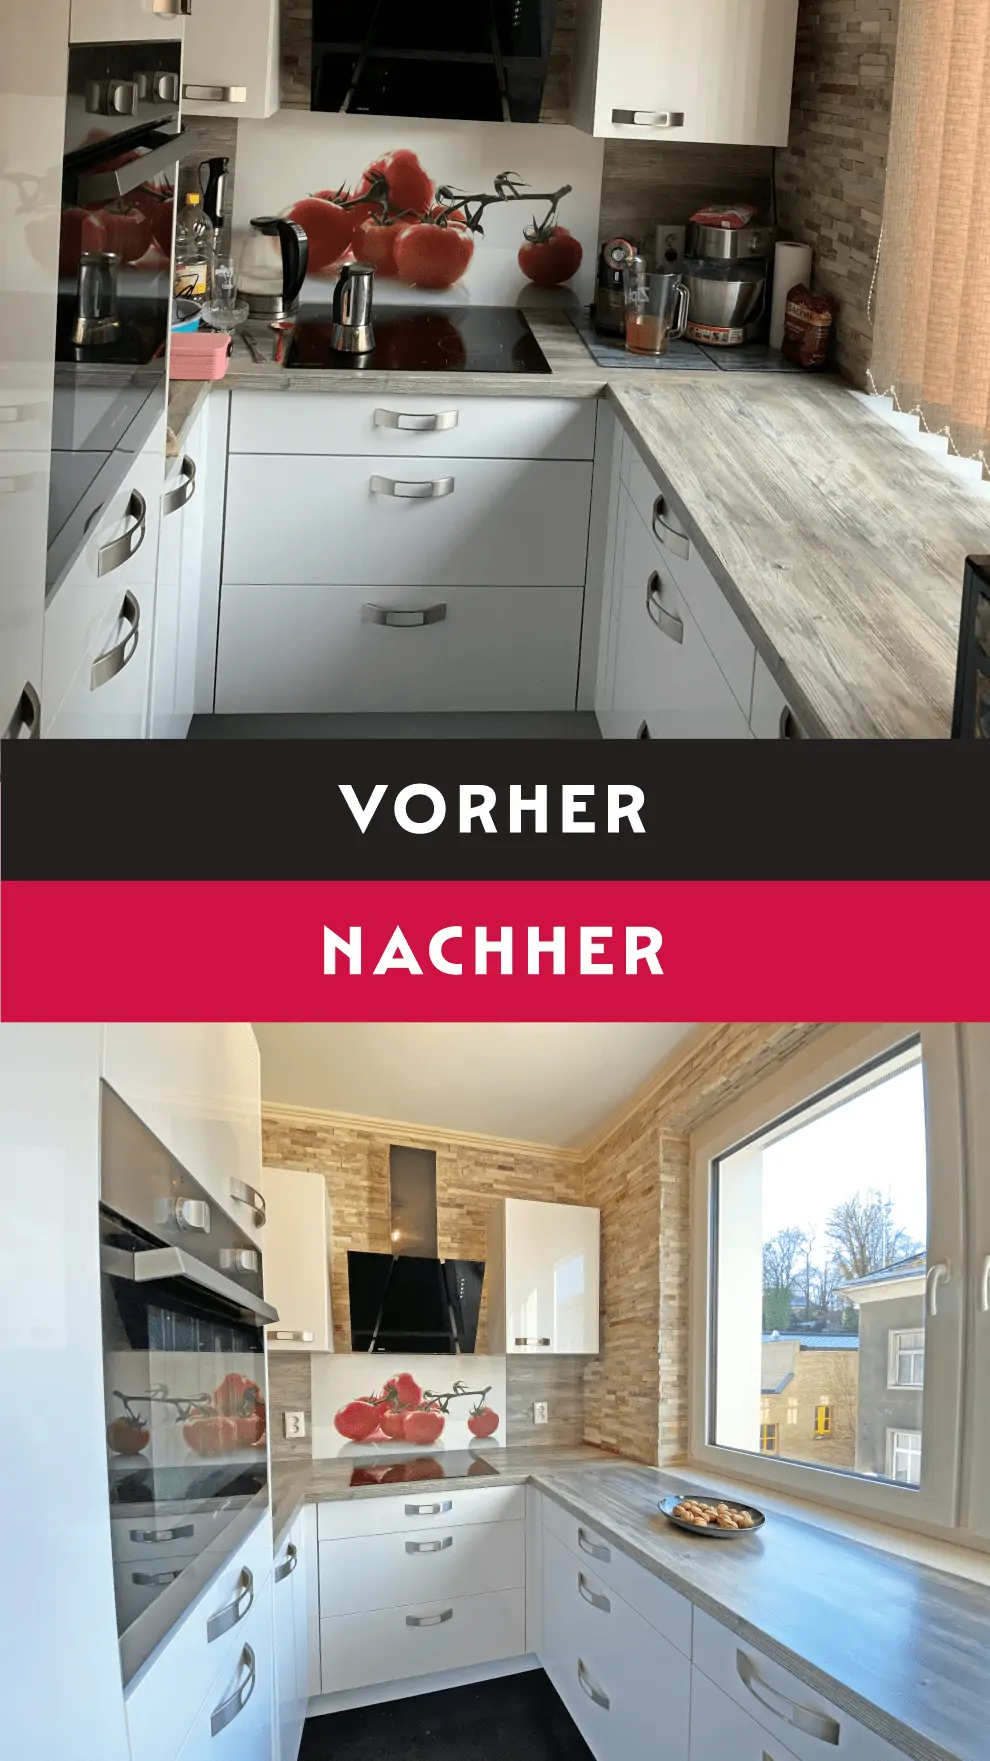 Eine Fotomontage mit Vorher-Nachher-Vergleich von einer modernen, weißen Küche mit grauer Arbeitsfläche